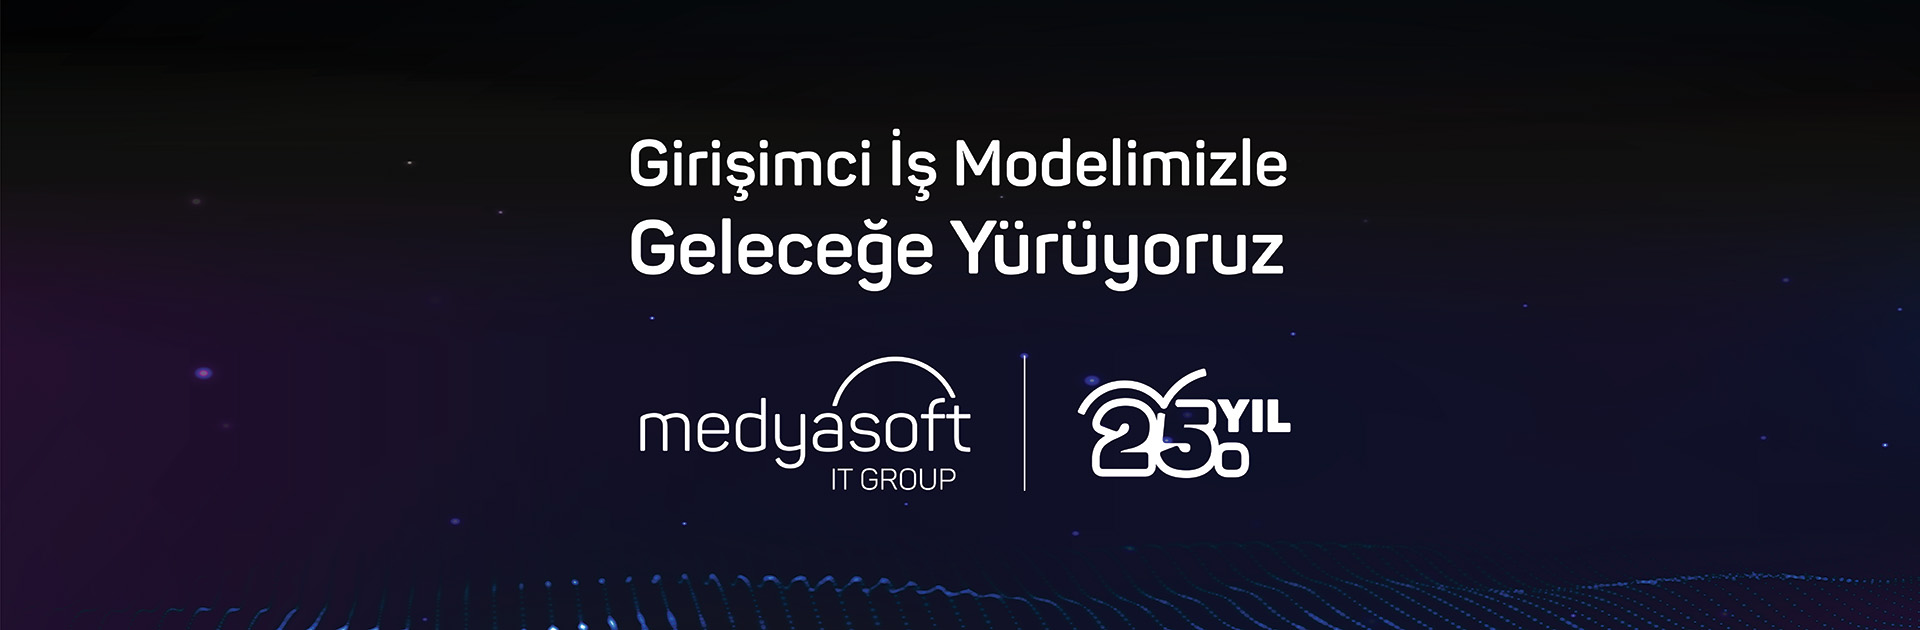 Medyasoft Bilişim Grubu 25. Yılını Kutluyor